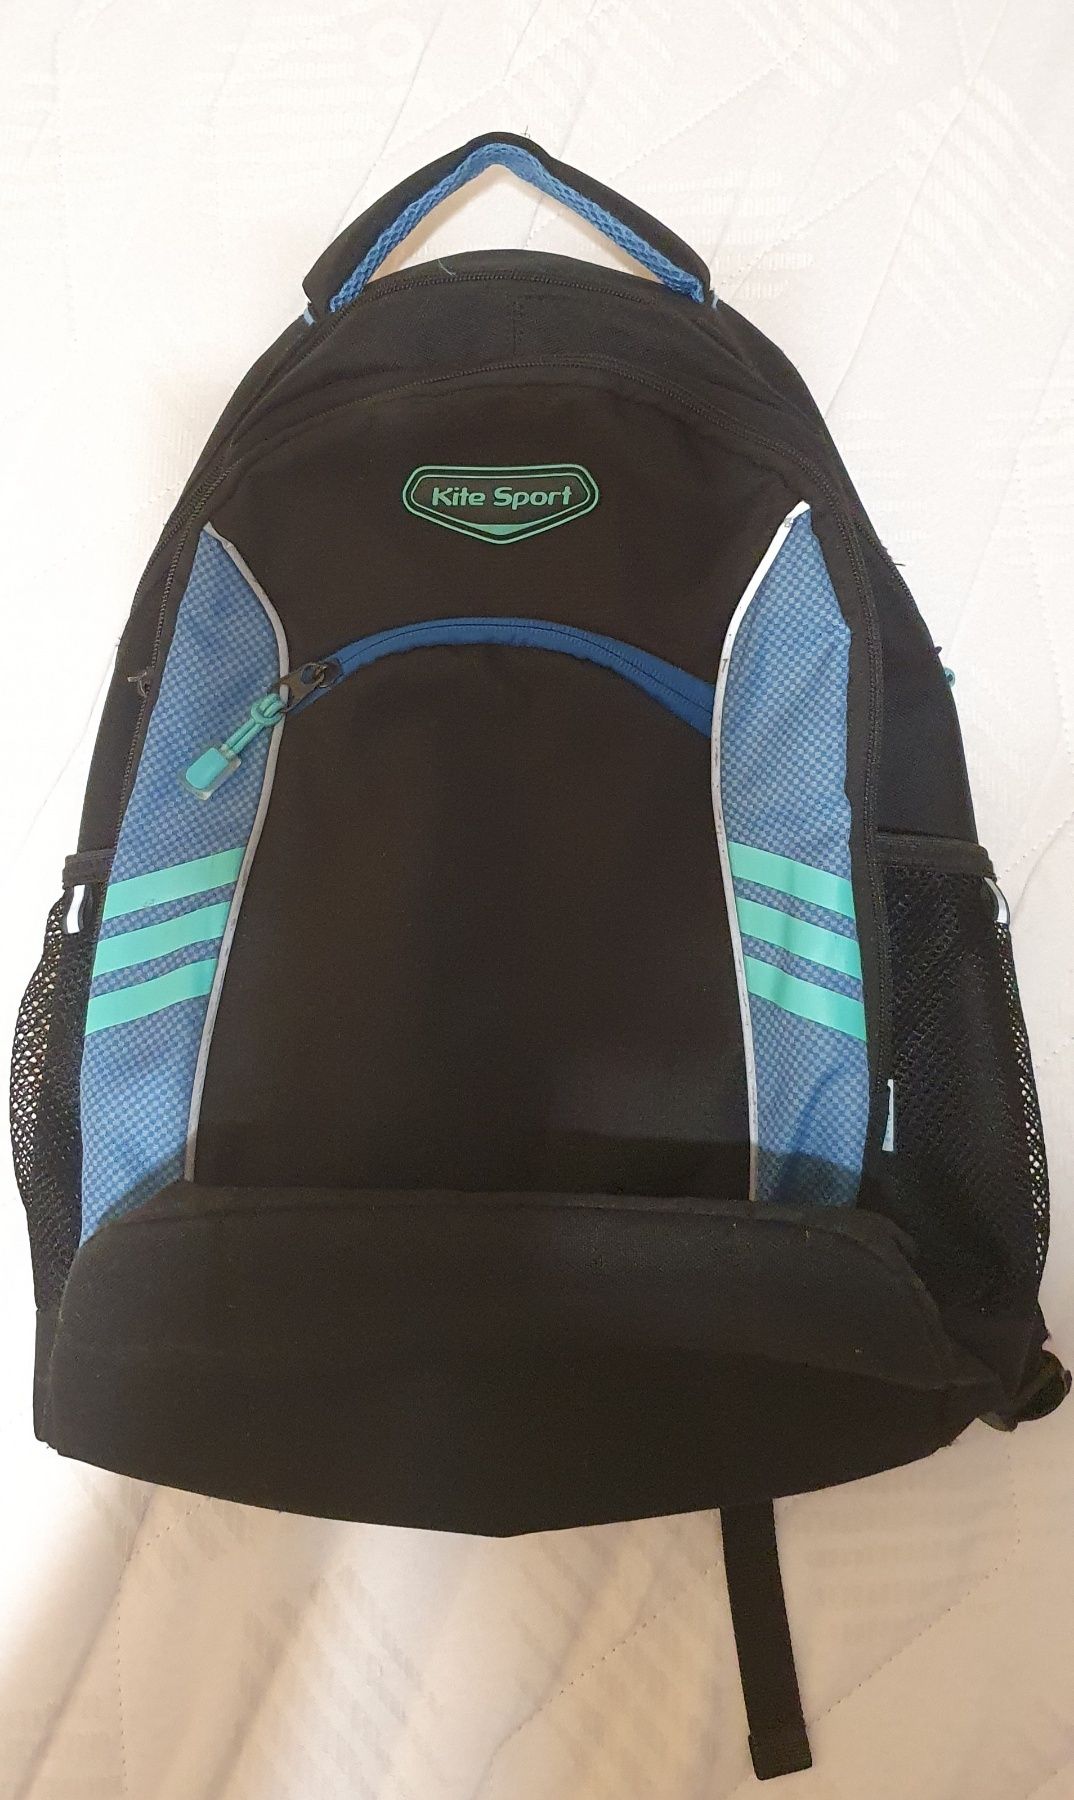 Продам ортопедический рюкзак для подростка кайт (kite sport)